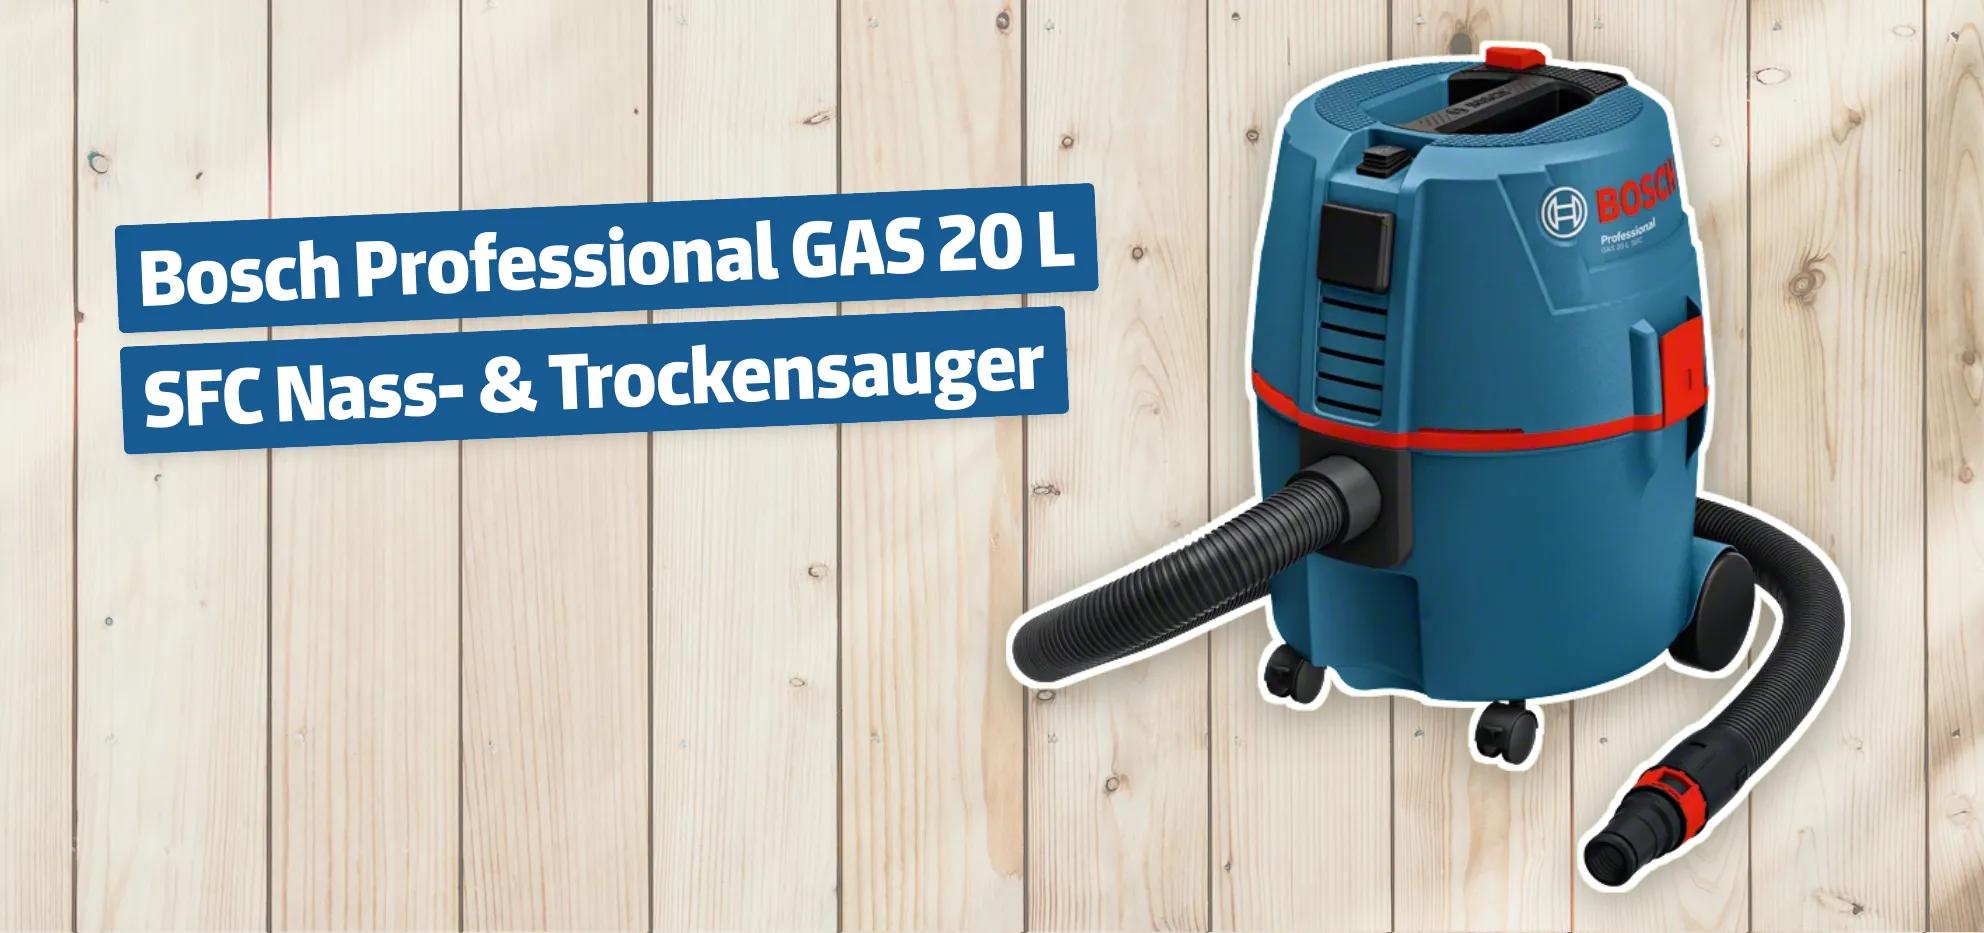 Bosch Professional GAS 20 L SFC Nass- & Trockensauger